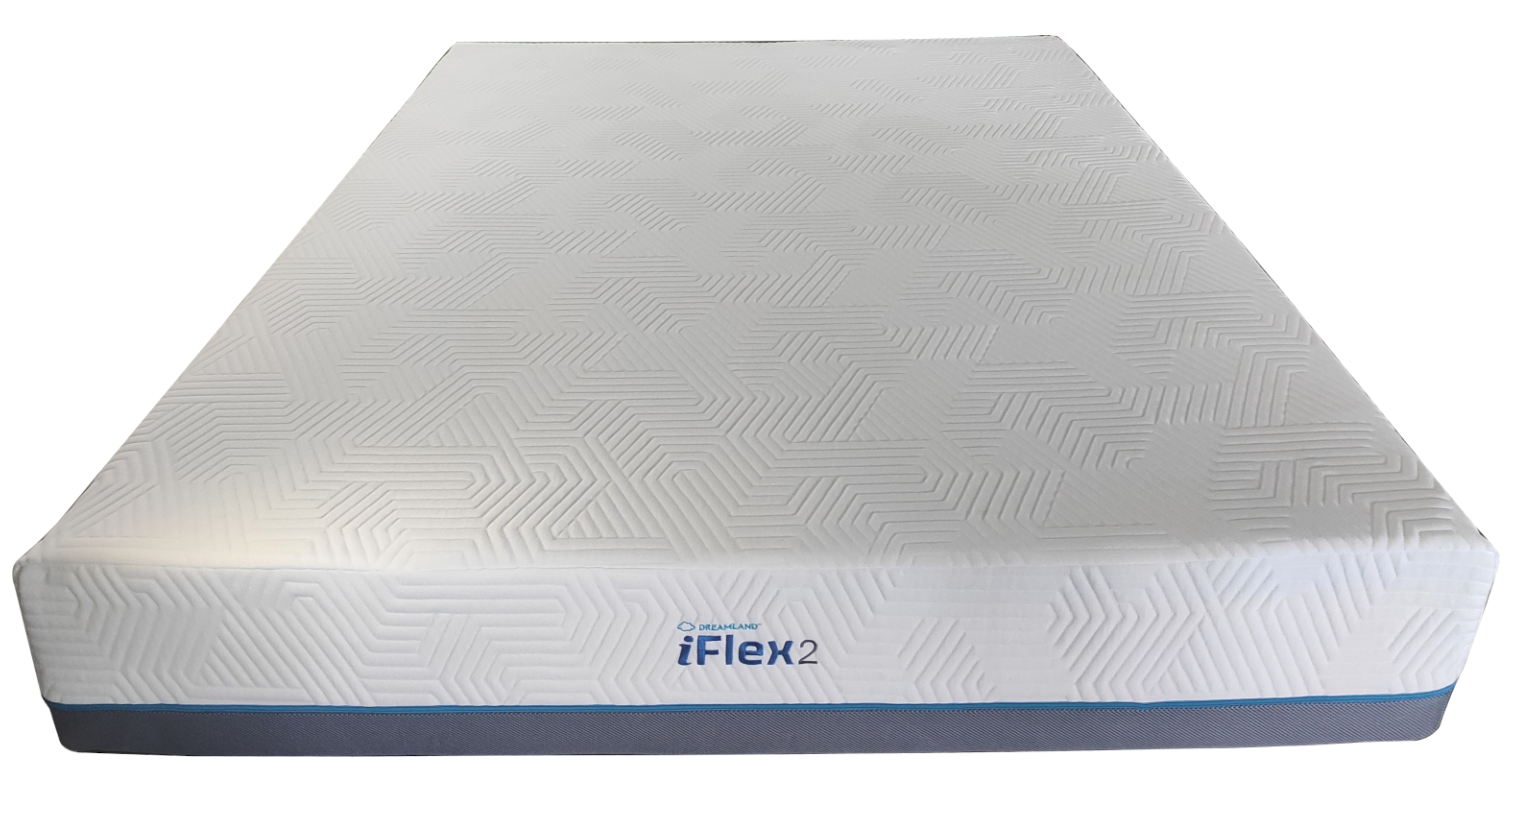 iFlex2-1536x1153